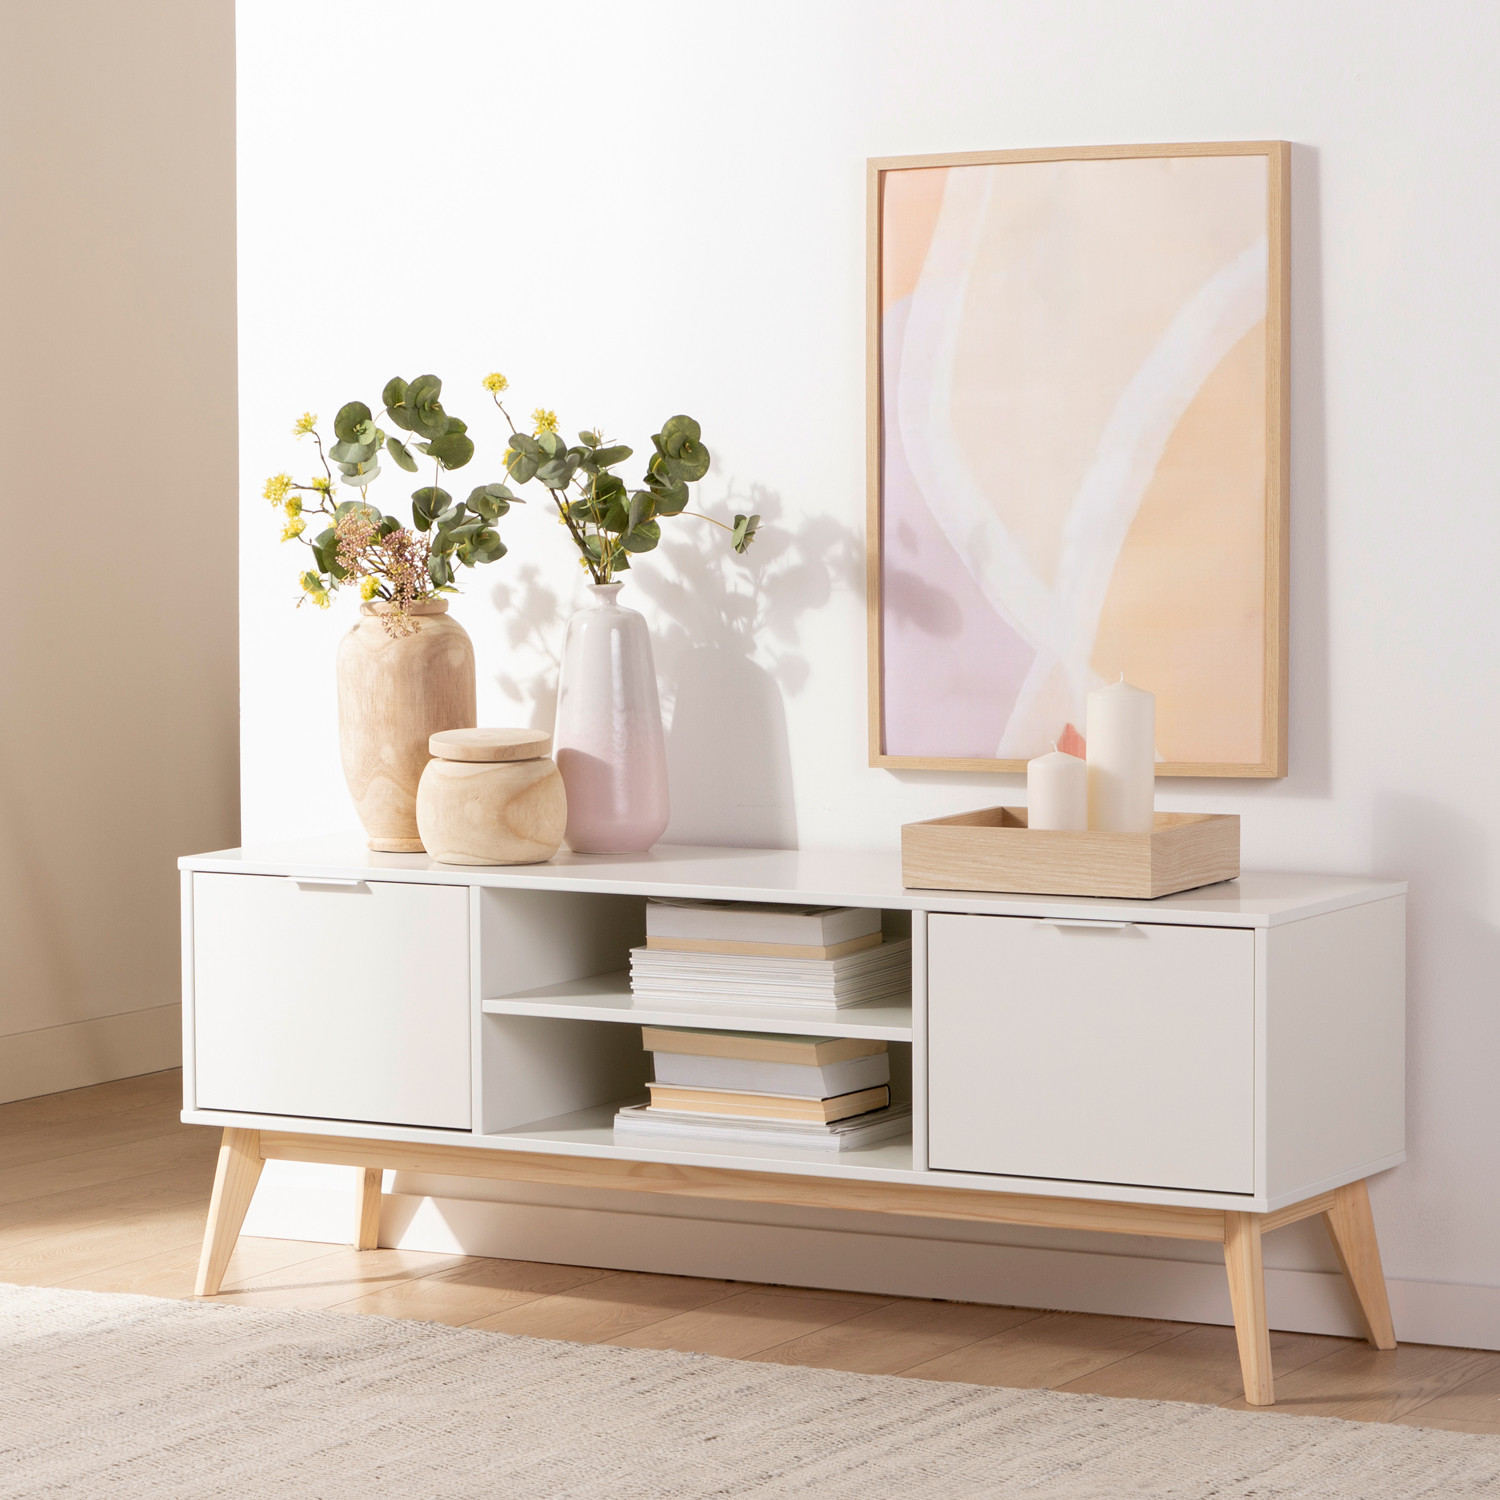 El mueble de TV lacado en blanco de estilo nórdico Troy le aportará luminosidad a tu salón. Se trata de un mueble sencillo y atemporal con una gran capacidad de almacenaje que te permitirá mantener en orden tu hogar.